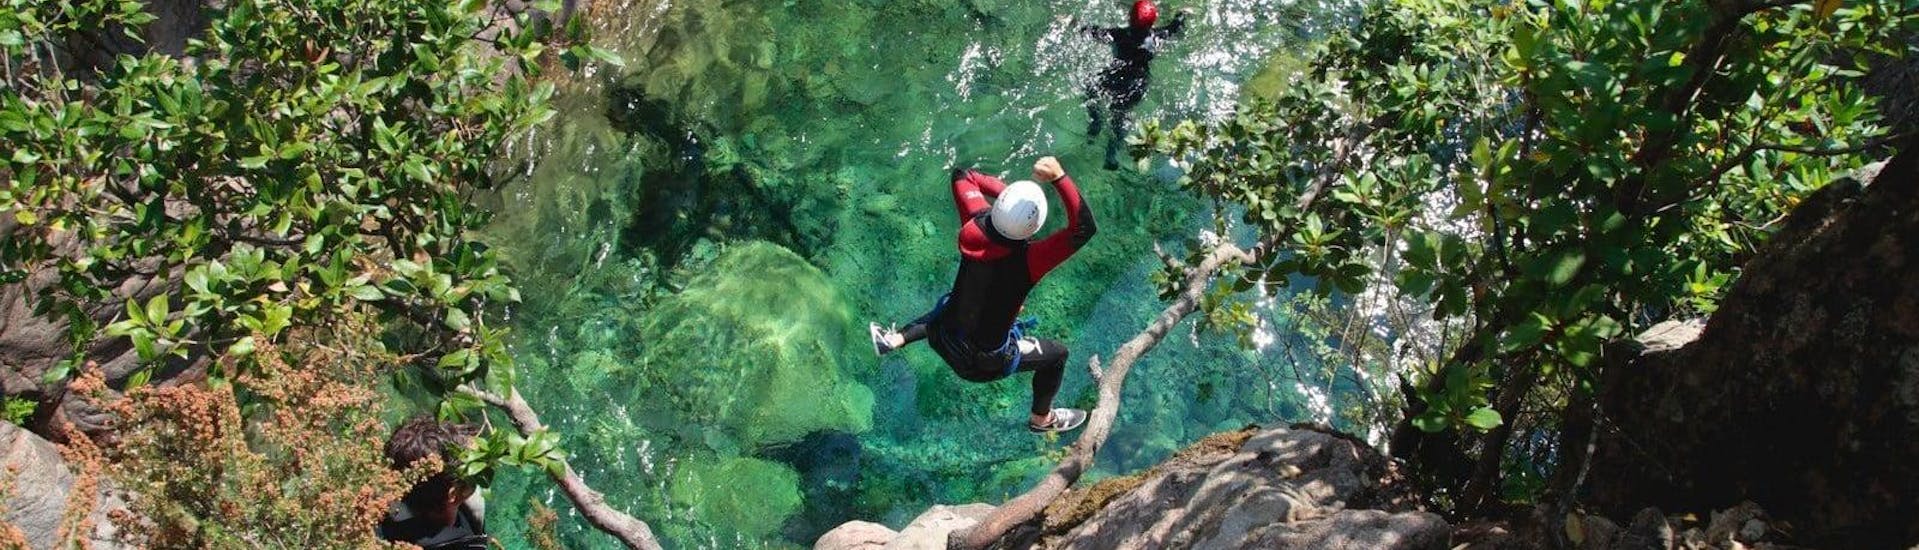 Ein Teilnehmer des Canyoning im Pulischellu springt unter Aufsicht eines qualifizierten Canyoning-Guides von Acqua et Natura in einen smaragdgrünen Naturpool.